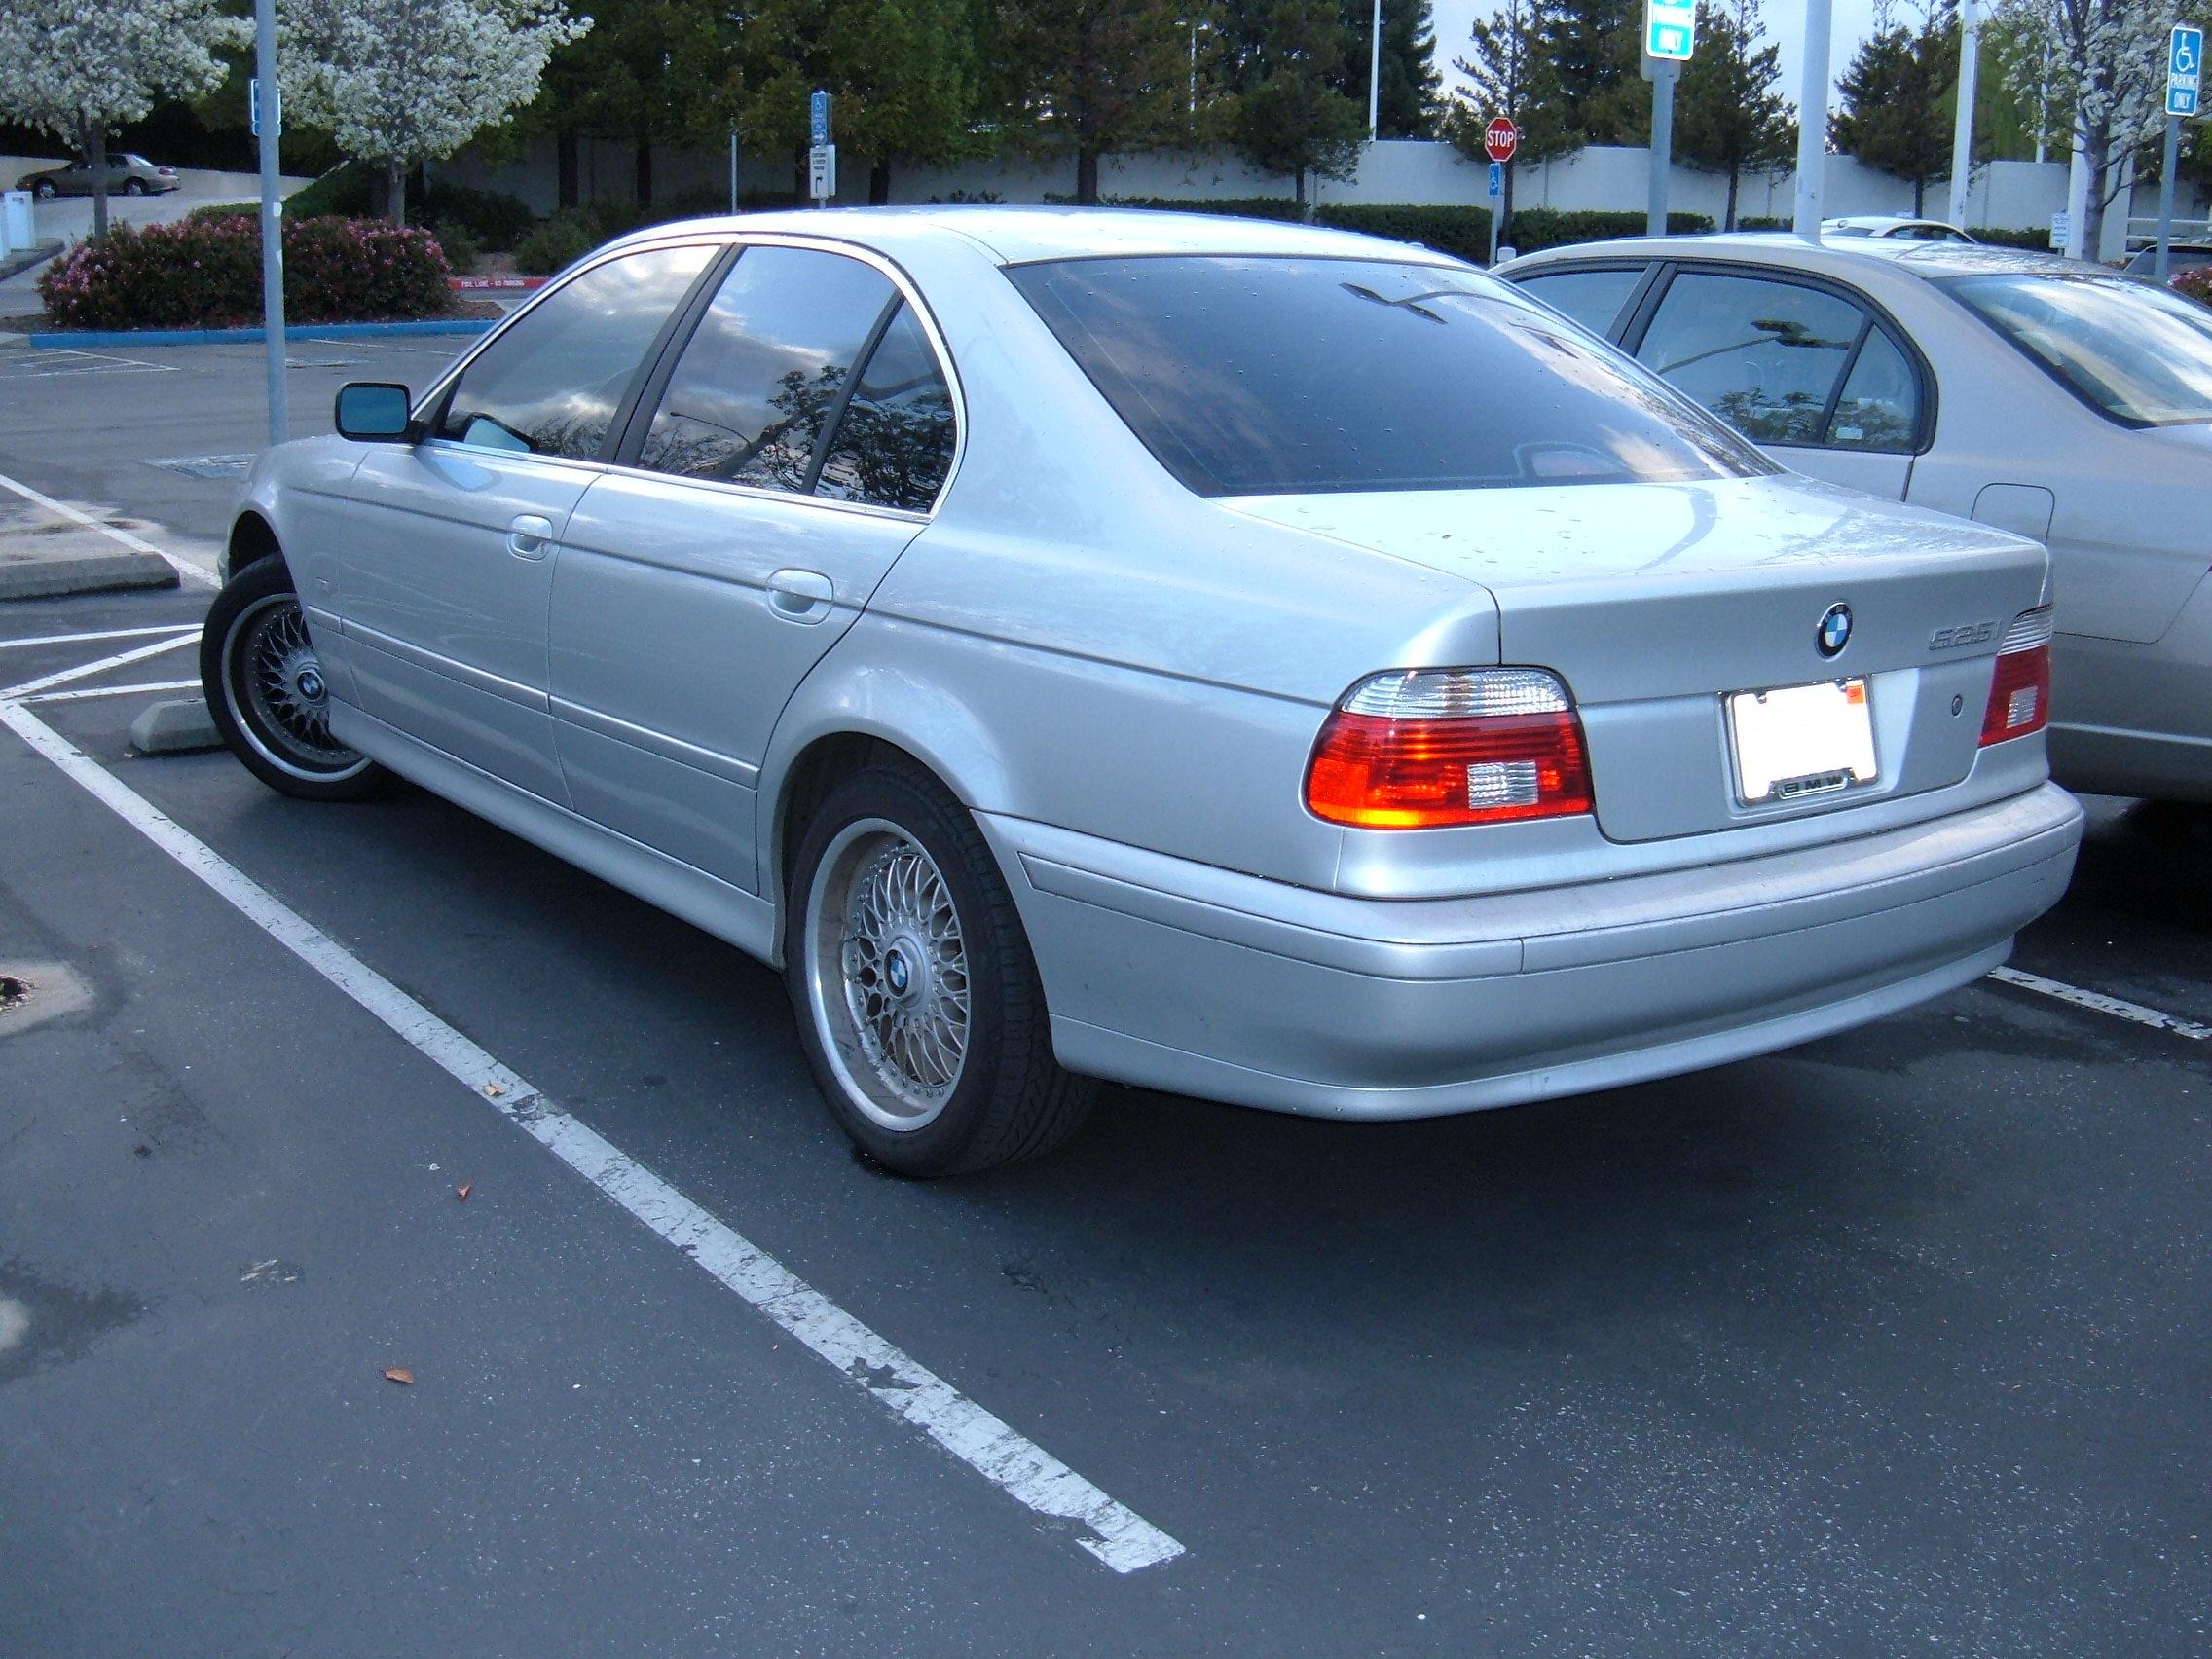 File:Silver BMW 525i rear.JPG